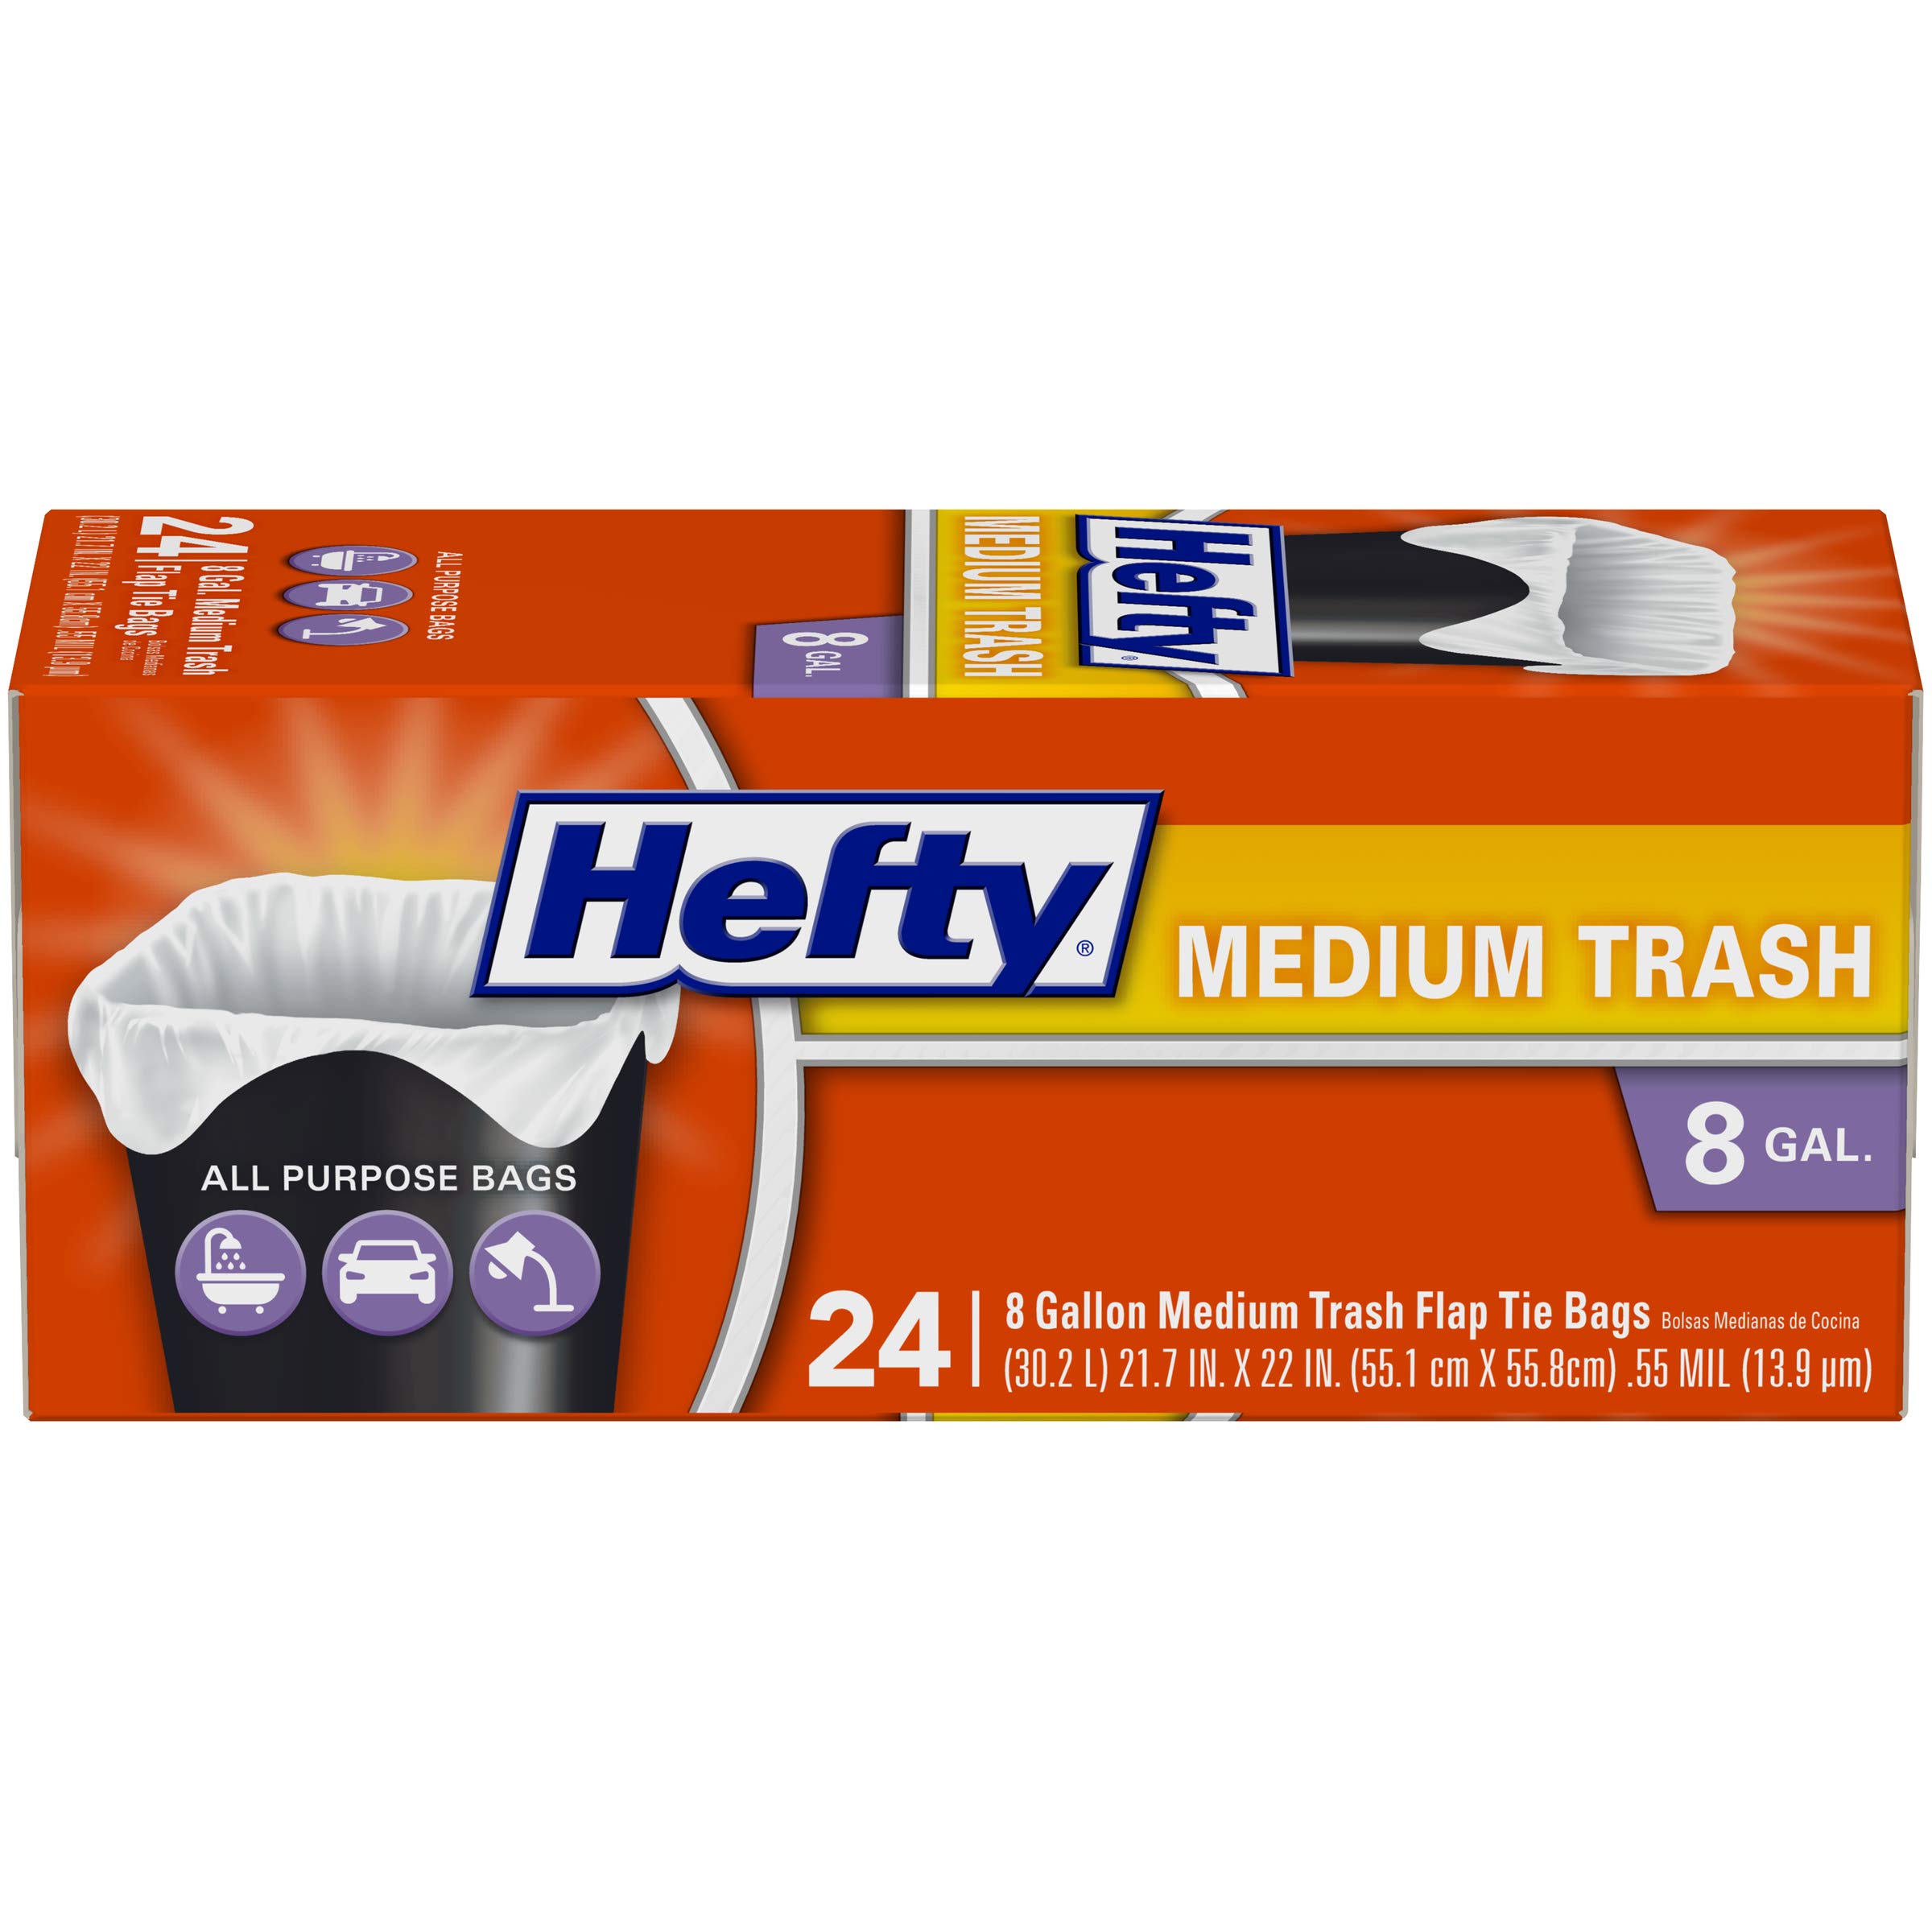 12-Pack 24-Count Hefty Medium Trash Bags/Garbage Bags (Flap Tie, 8 Gallon)  $22 w/ S&S & More + Free S&H w/ Prime or $35+